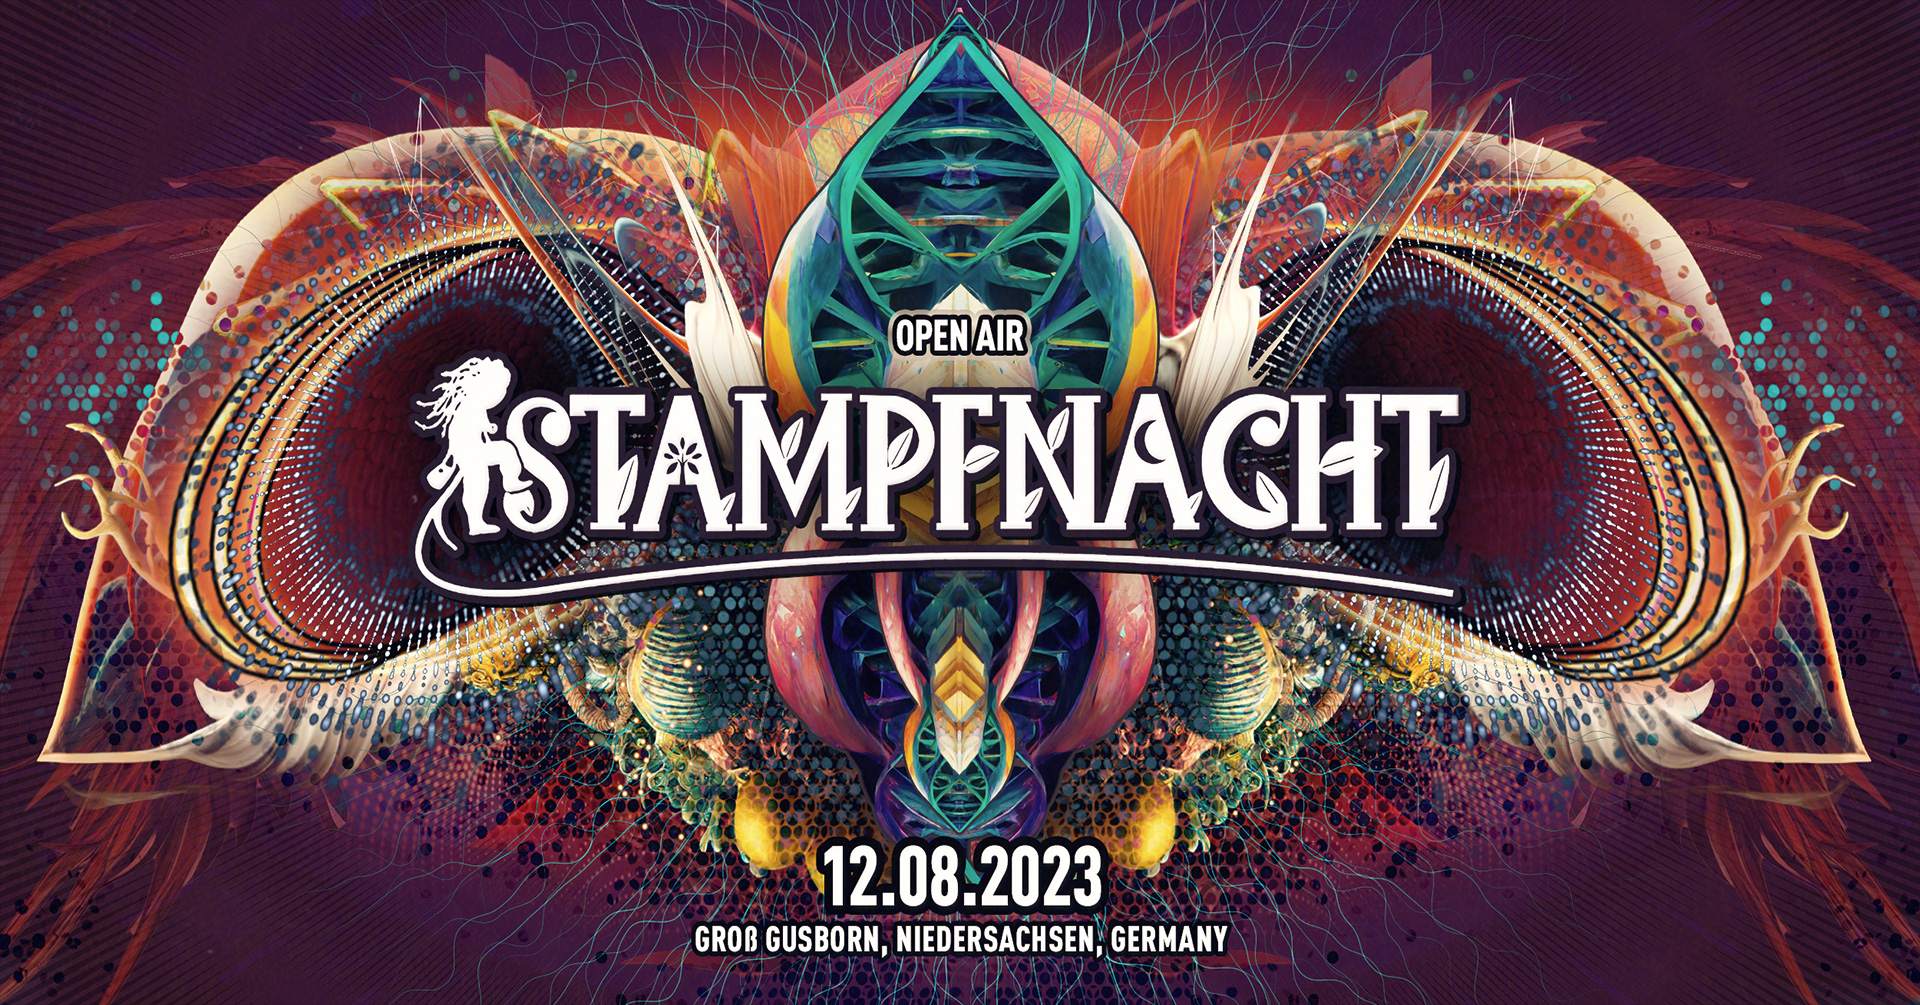 Stampfnacht Open Air 2023 - フライヤー表